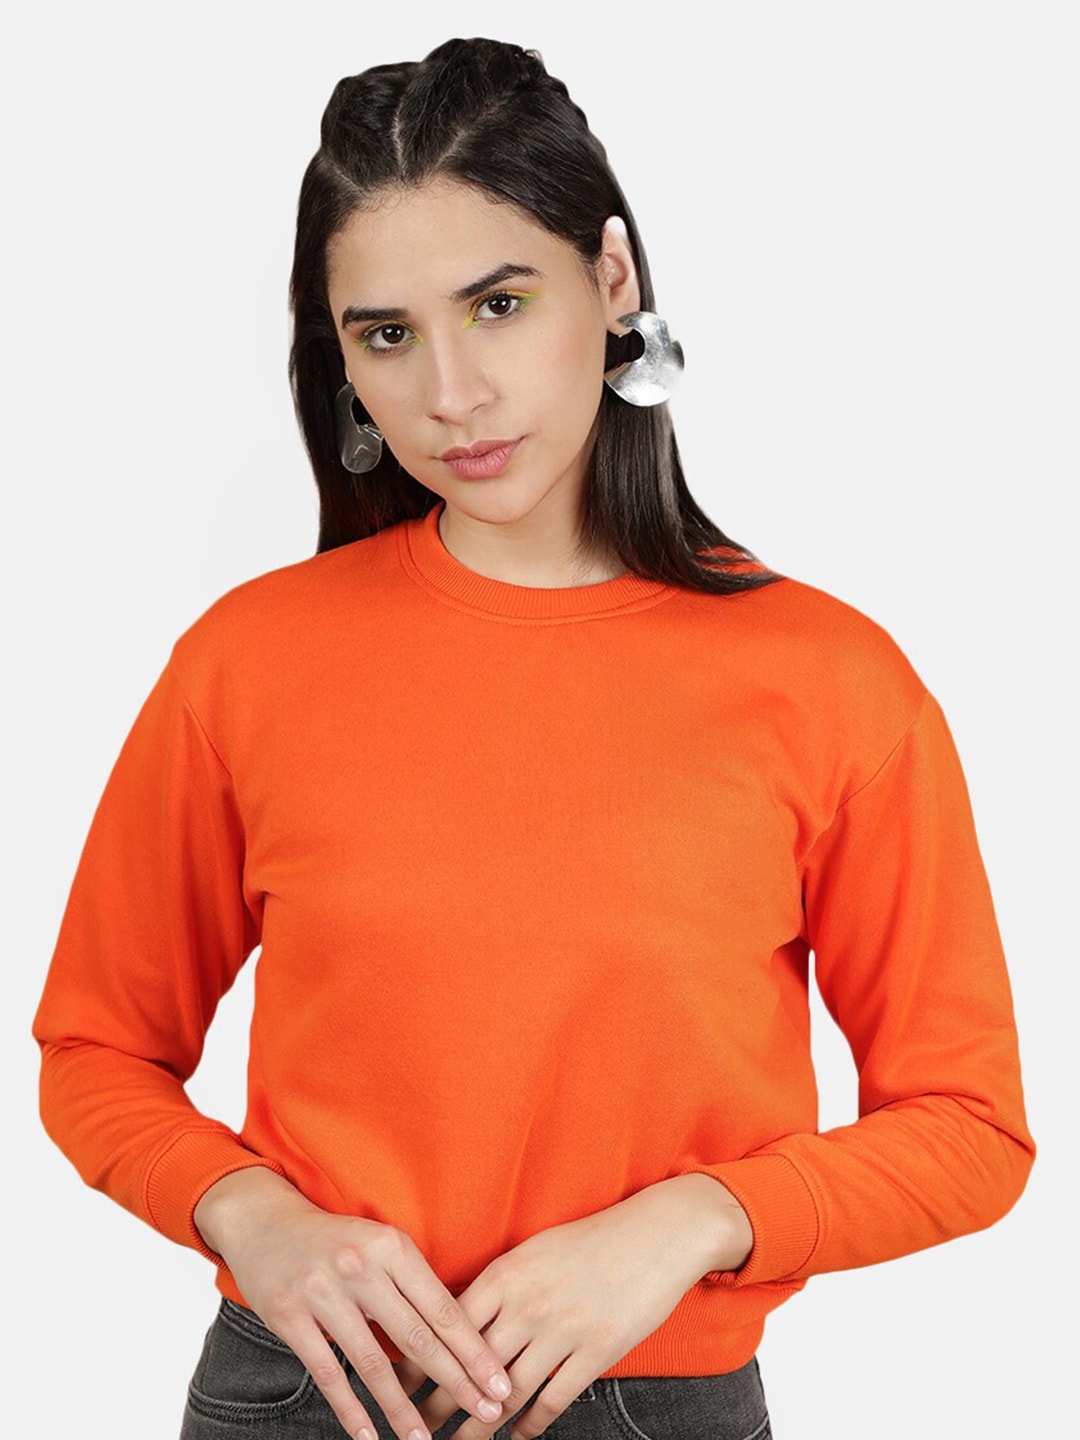 Shop Women Round Neck Crop Sweatshirt Online.